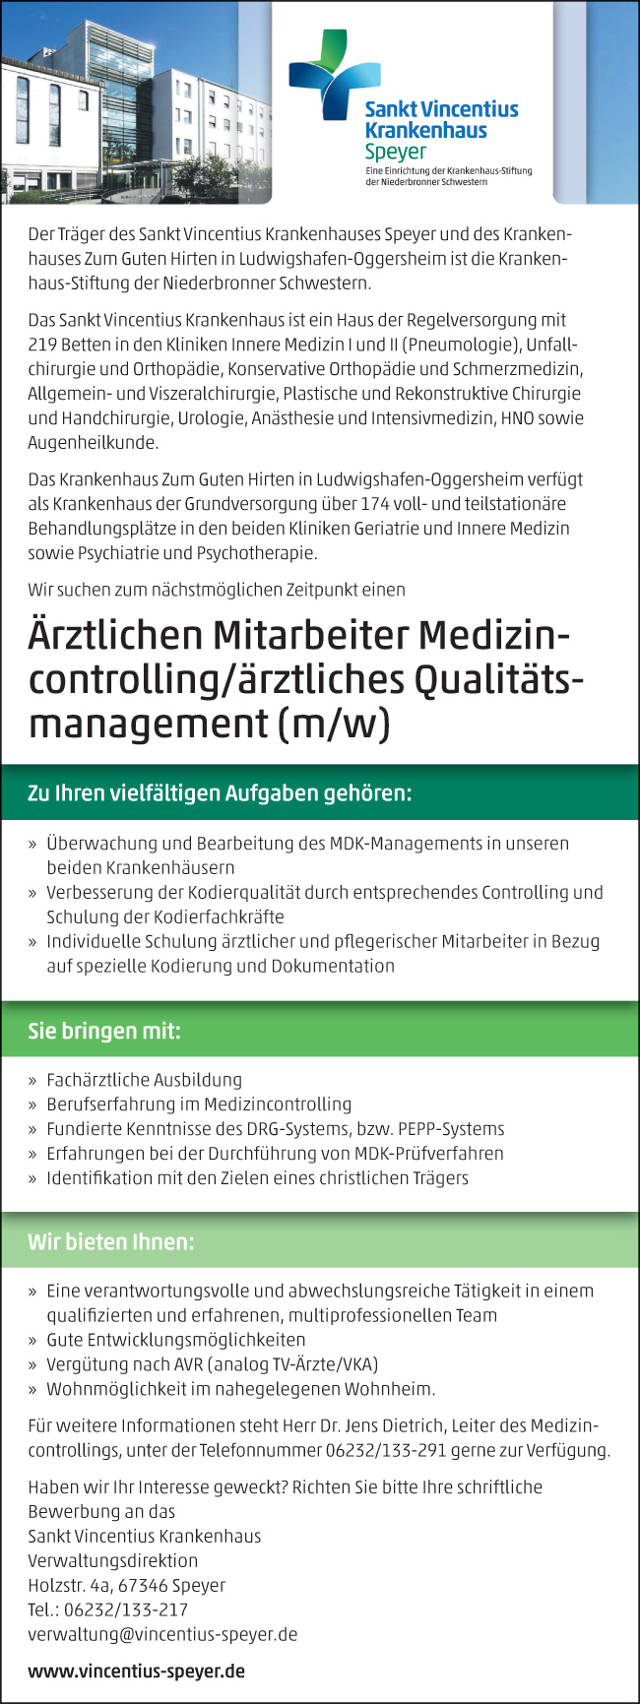 Sankt Vincentius Krankenhaus Speyer: Ärztlicher Mitarbeiter Medizincontrolling / Qualitätsmanagement (m/w)